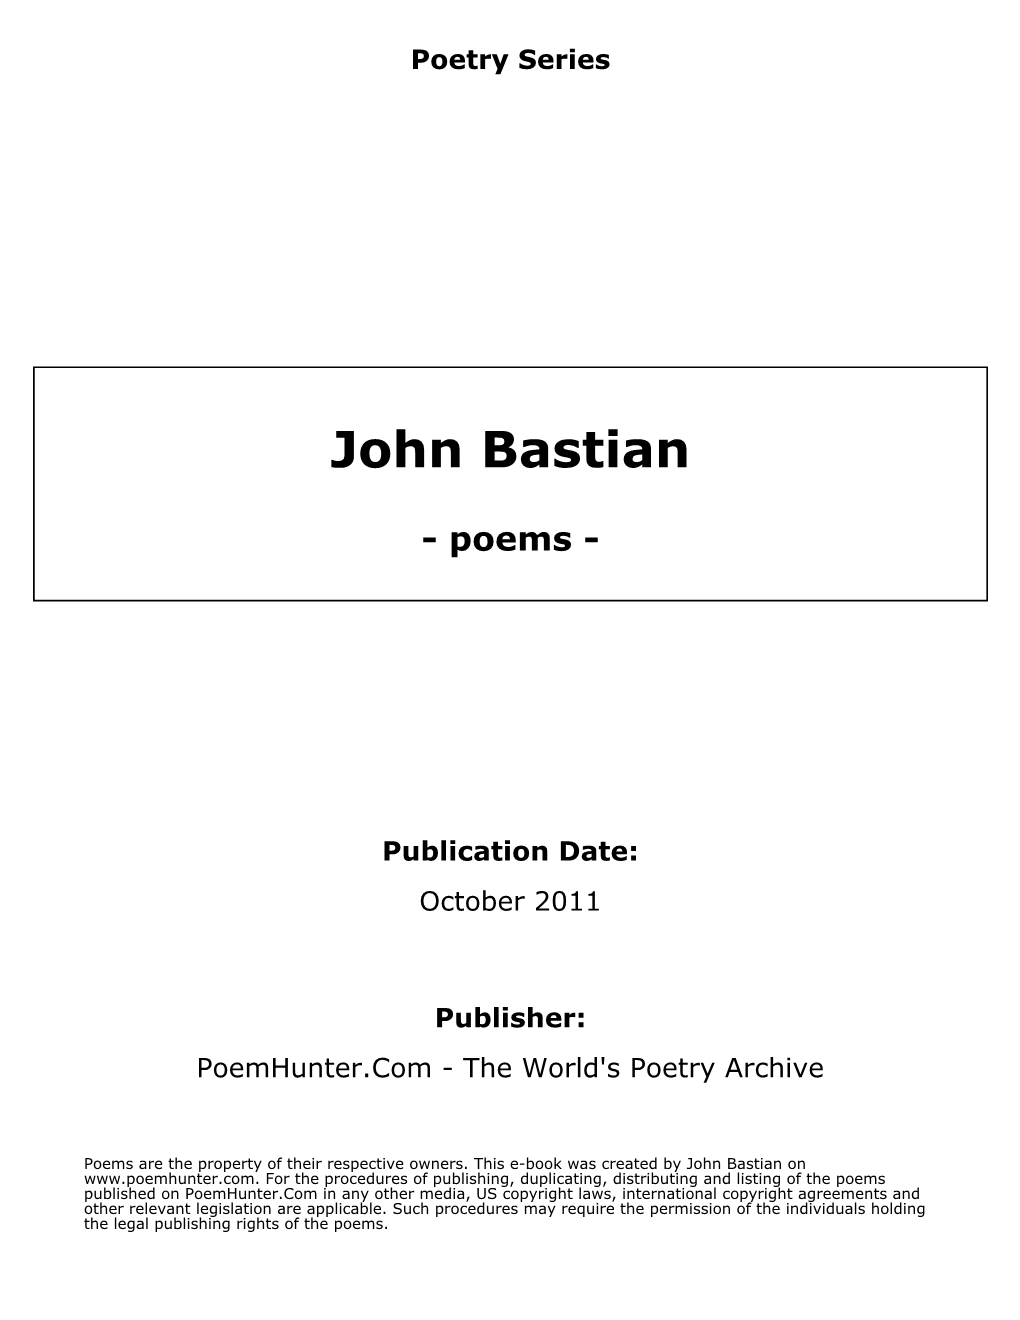 John Bastian